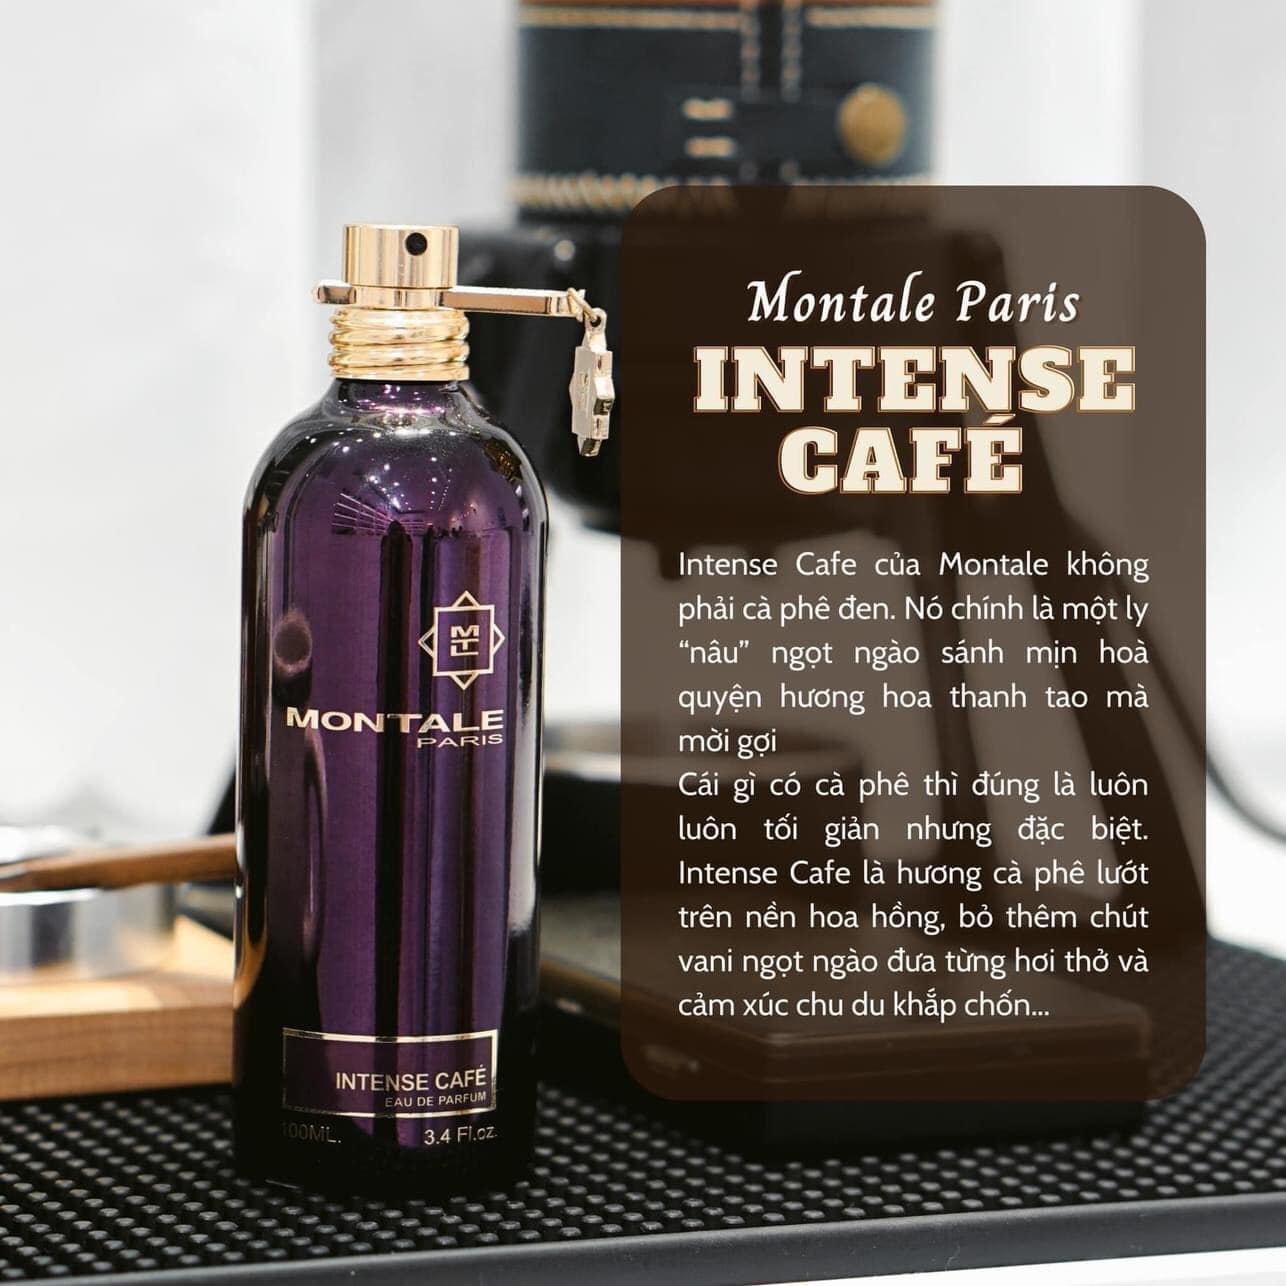 Montale Intense Cafe 4 - Nuochoarosa.com - Nước hoa cao cấp, chính hãng giá tốt, mẫu mới